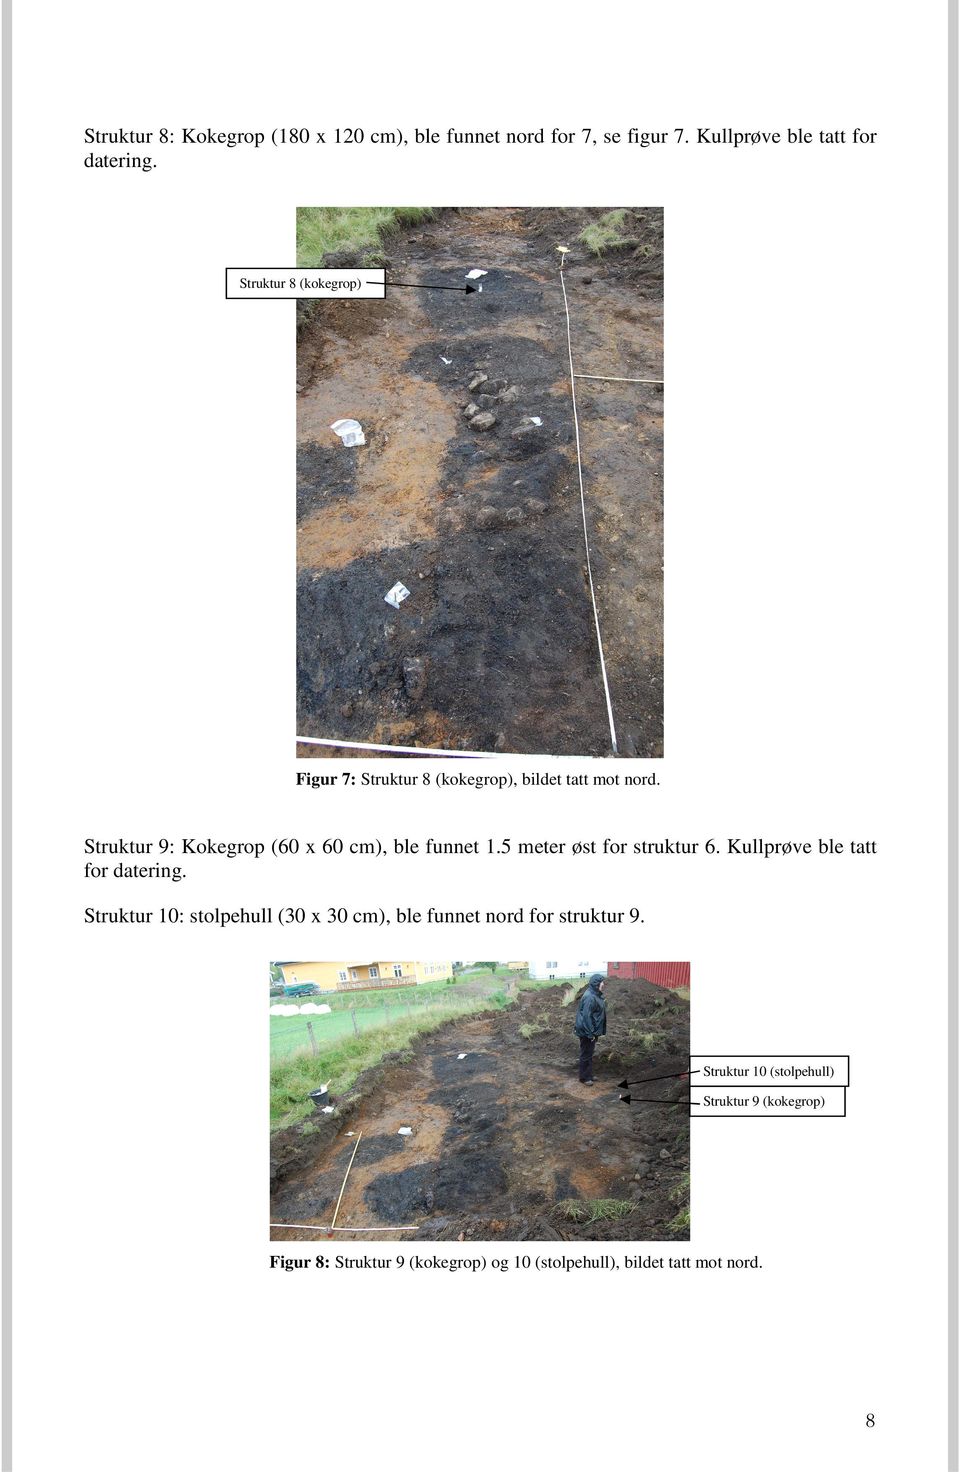 Struktur 9: Kokegrop (60 x 60 cm), ble funnet 1.5 meter øst for struktur 6. Kullprøve ble tatt for datering.